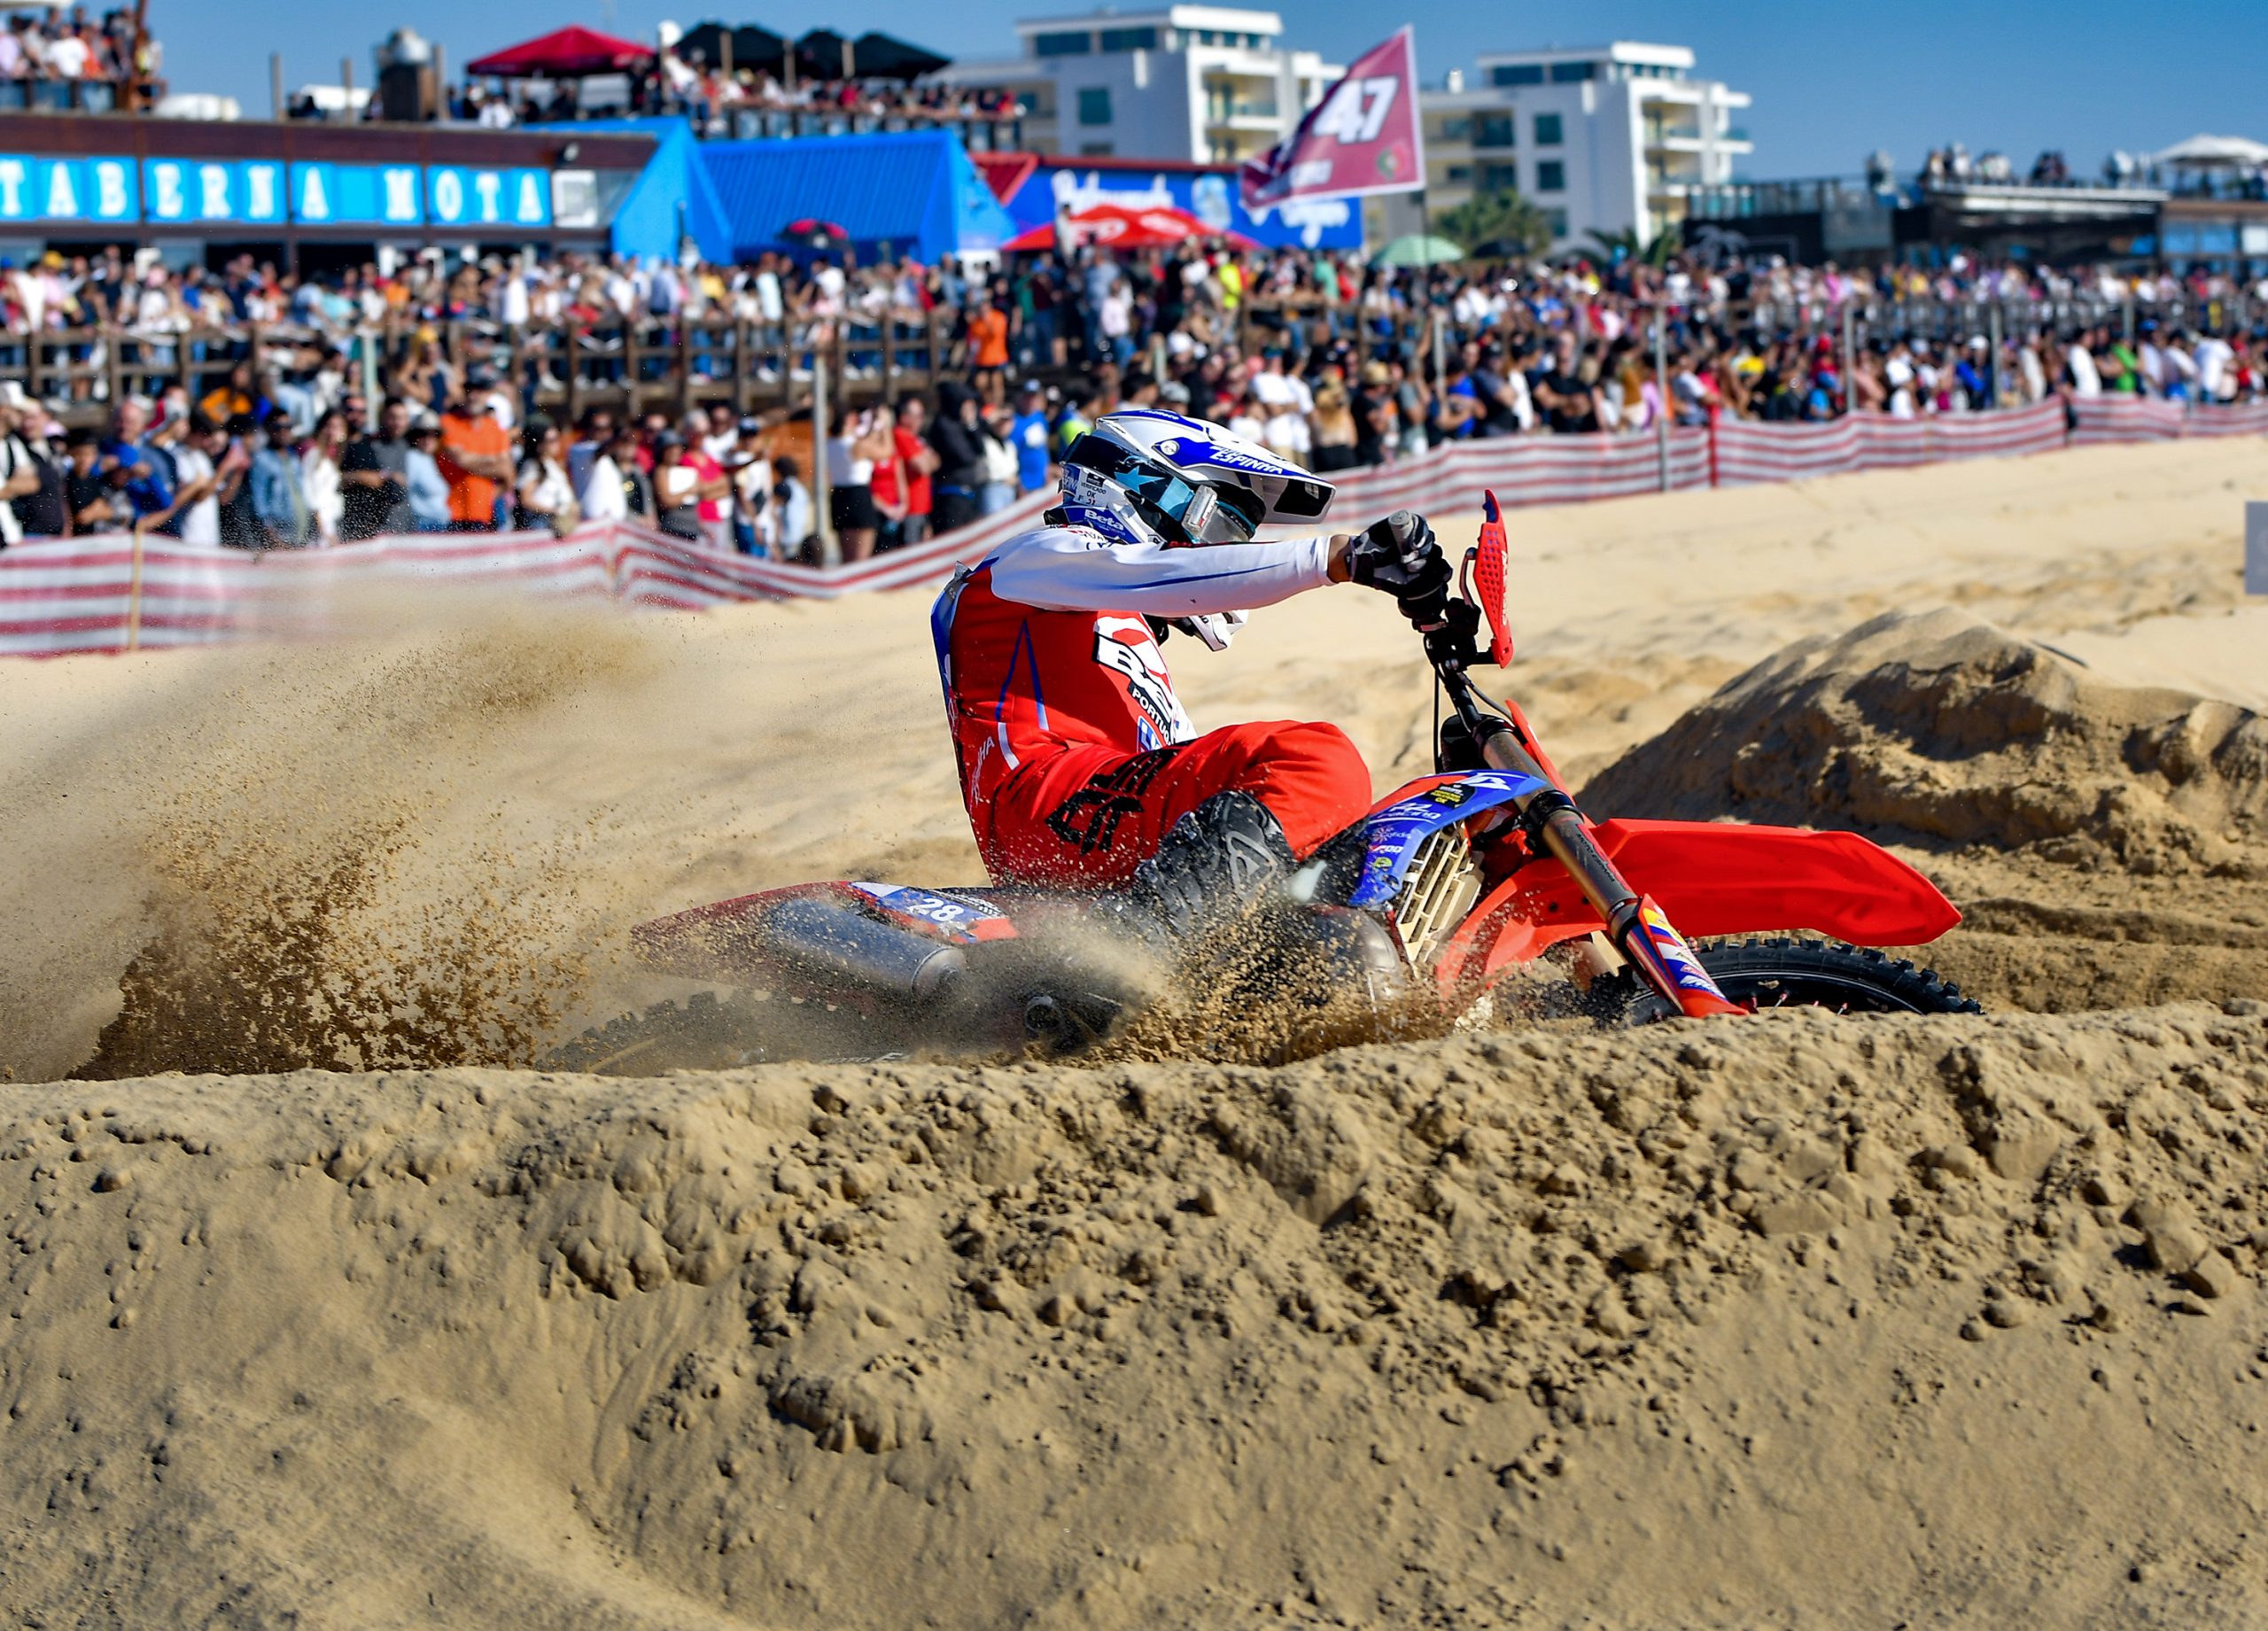 Taça do Mundo de Corridas em Areia: ACP apresenta o Monte Gordo Sand  Experience - MotoSport